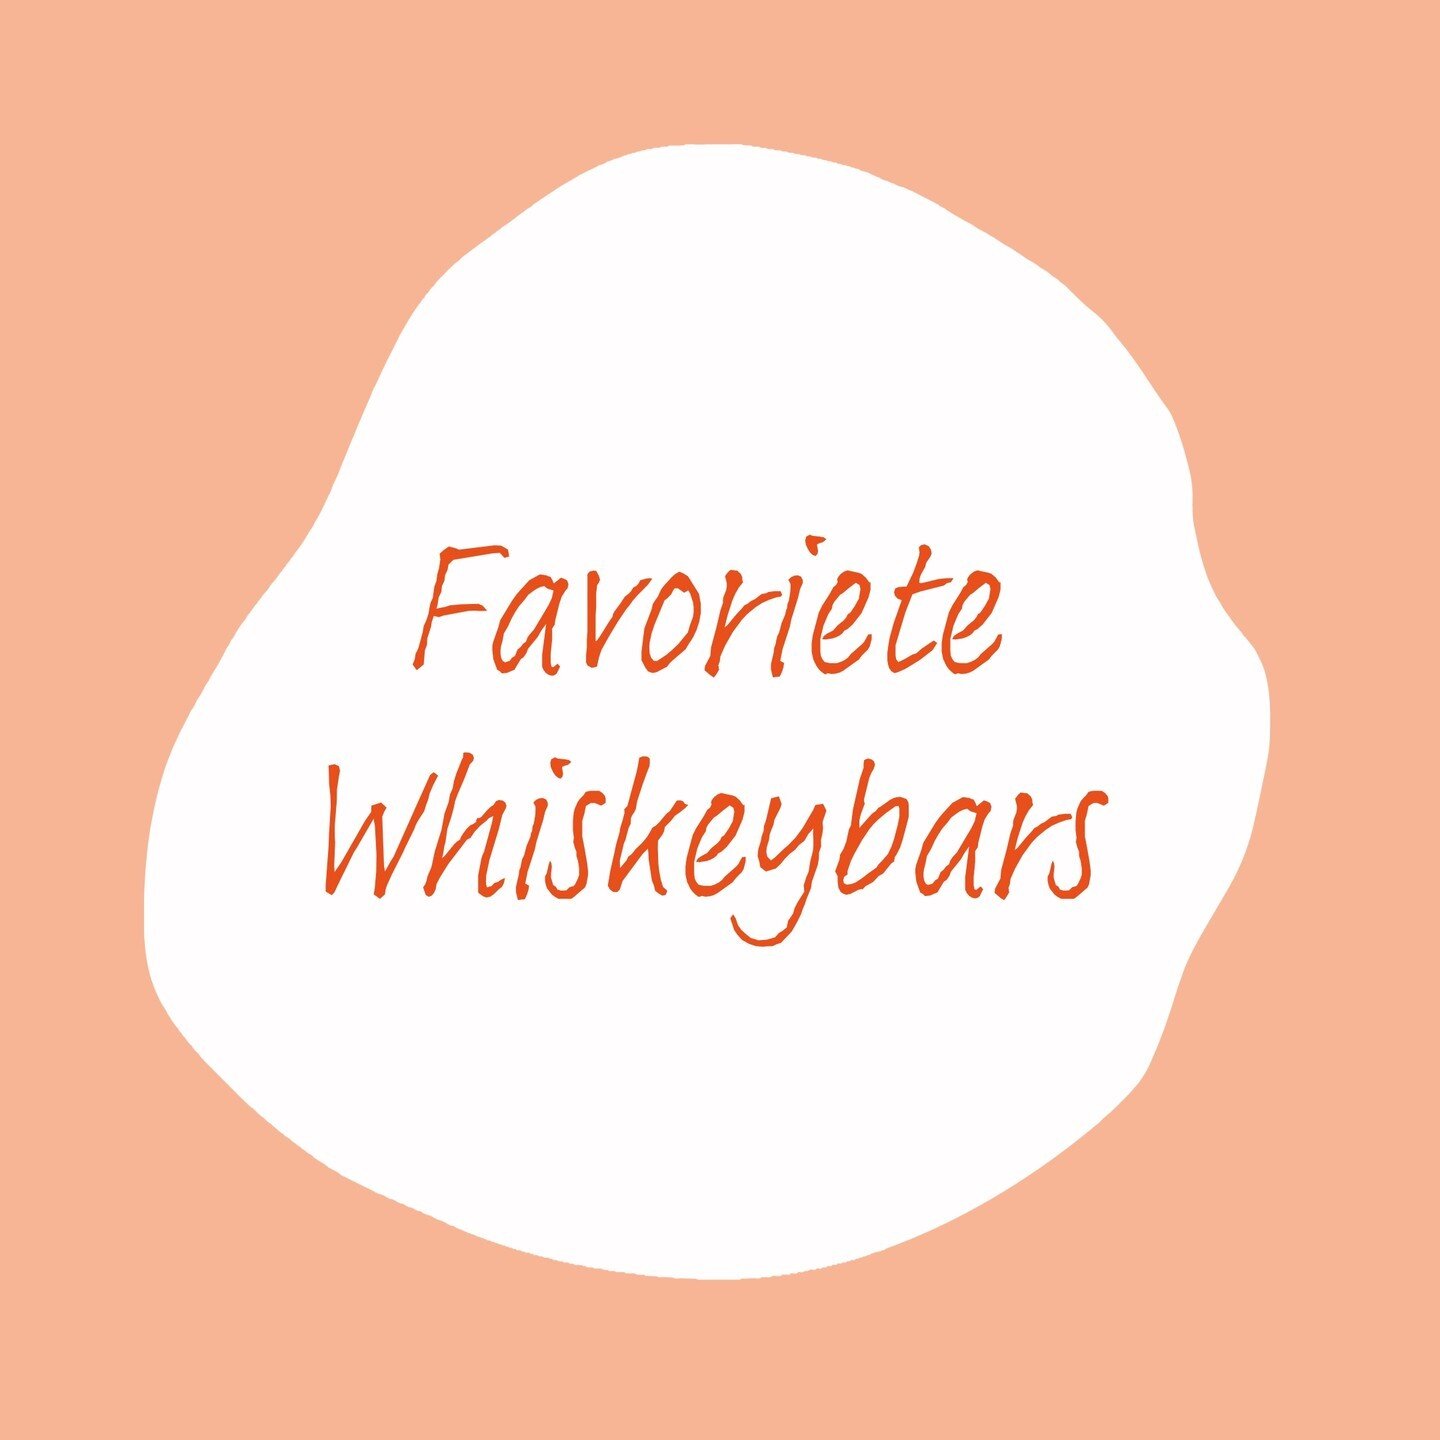 𝗩𝗮𝗻𝗱𝗮𝗮𝗴 𝘃𝗶𝗲𝗿𝗲𝗻 𝘄𝗲 𝗡𝗮𝘁𝗶𝗼𝗻𝗮𝗹𝗲 𝗪𝗵𝗶𝘀𝗸𝗲𝘆 𝗱𝗮𝗴! En dat betekent dat we onze favoriete whiskeybars in Den Haag met jullie willen delen. 🥃

1. Huppelthepub is d&eacute; plek voor whiskeyliefhebbers. Met meer dan 100 soorten 